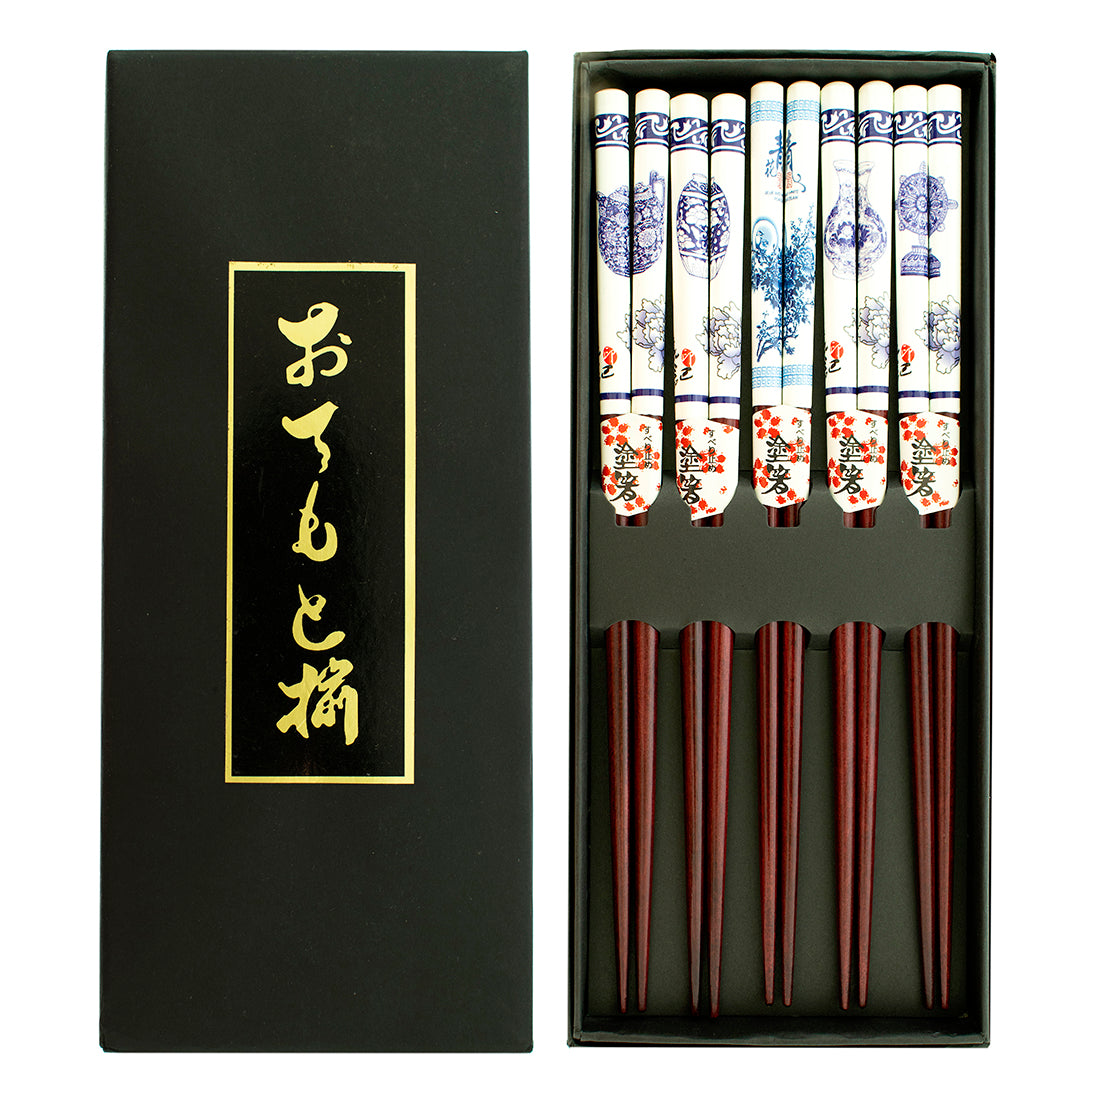 Blue & White – Wood Chopsticks - Original Source